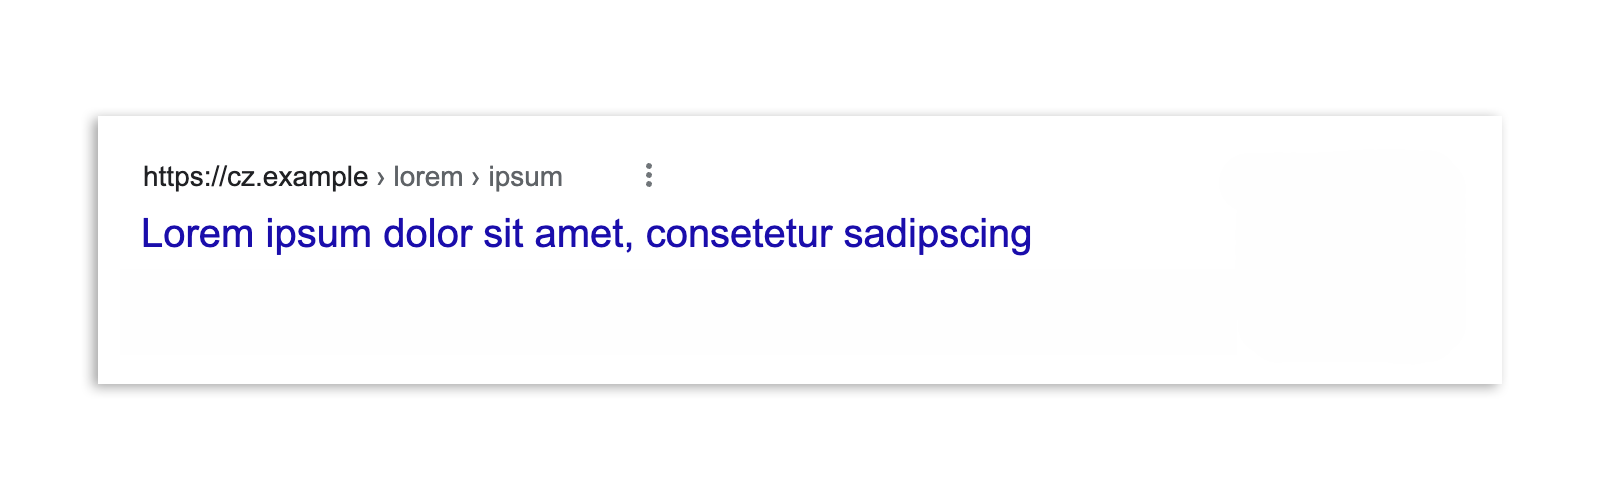 Yalnızca makalenin başlığı ve URL'sinin gösterildiği, yasa yürürlüğe girdikten sonra Çekya'daki bir Google Arama sonucu.